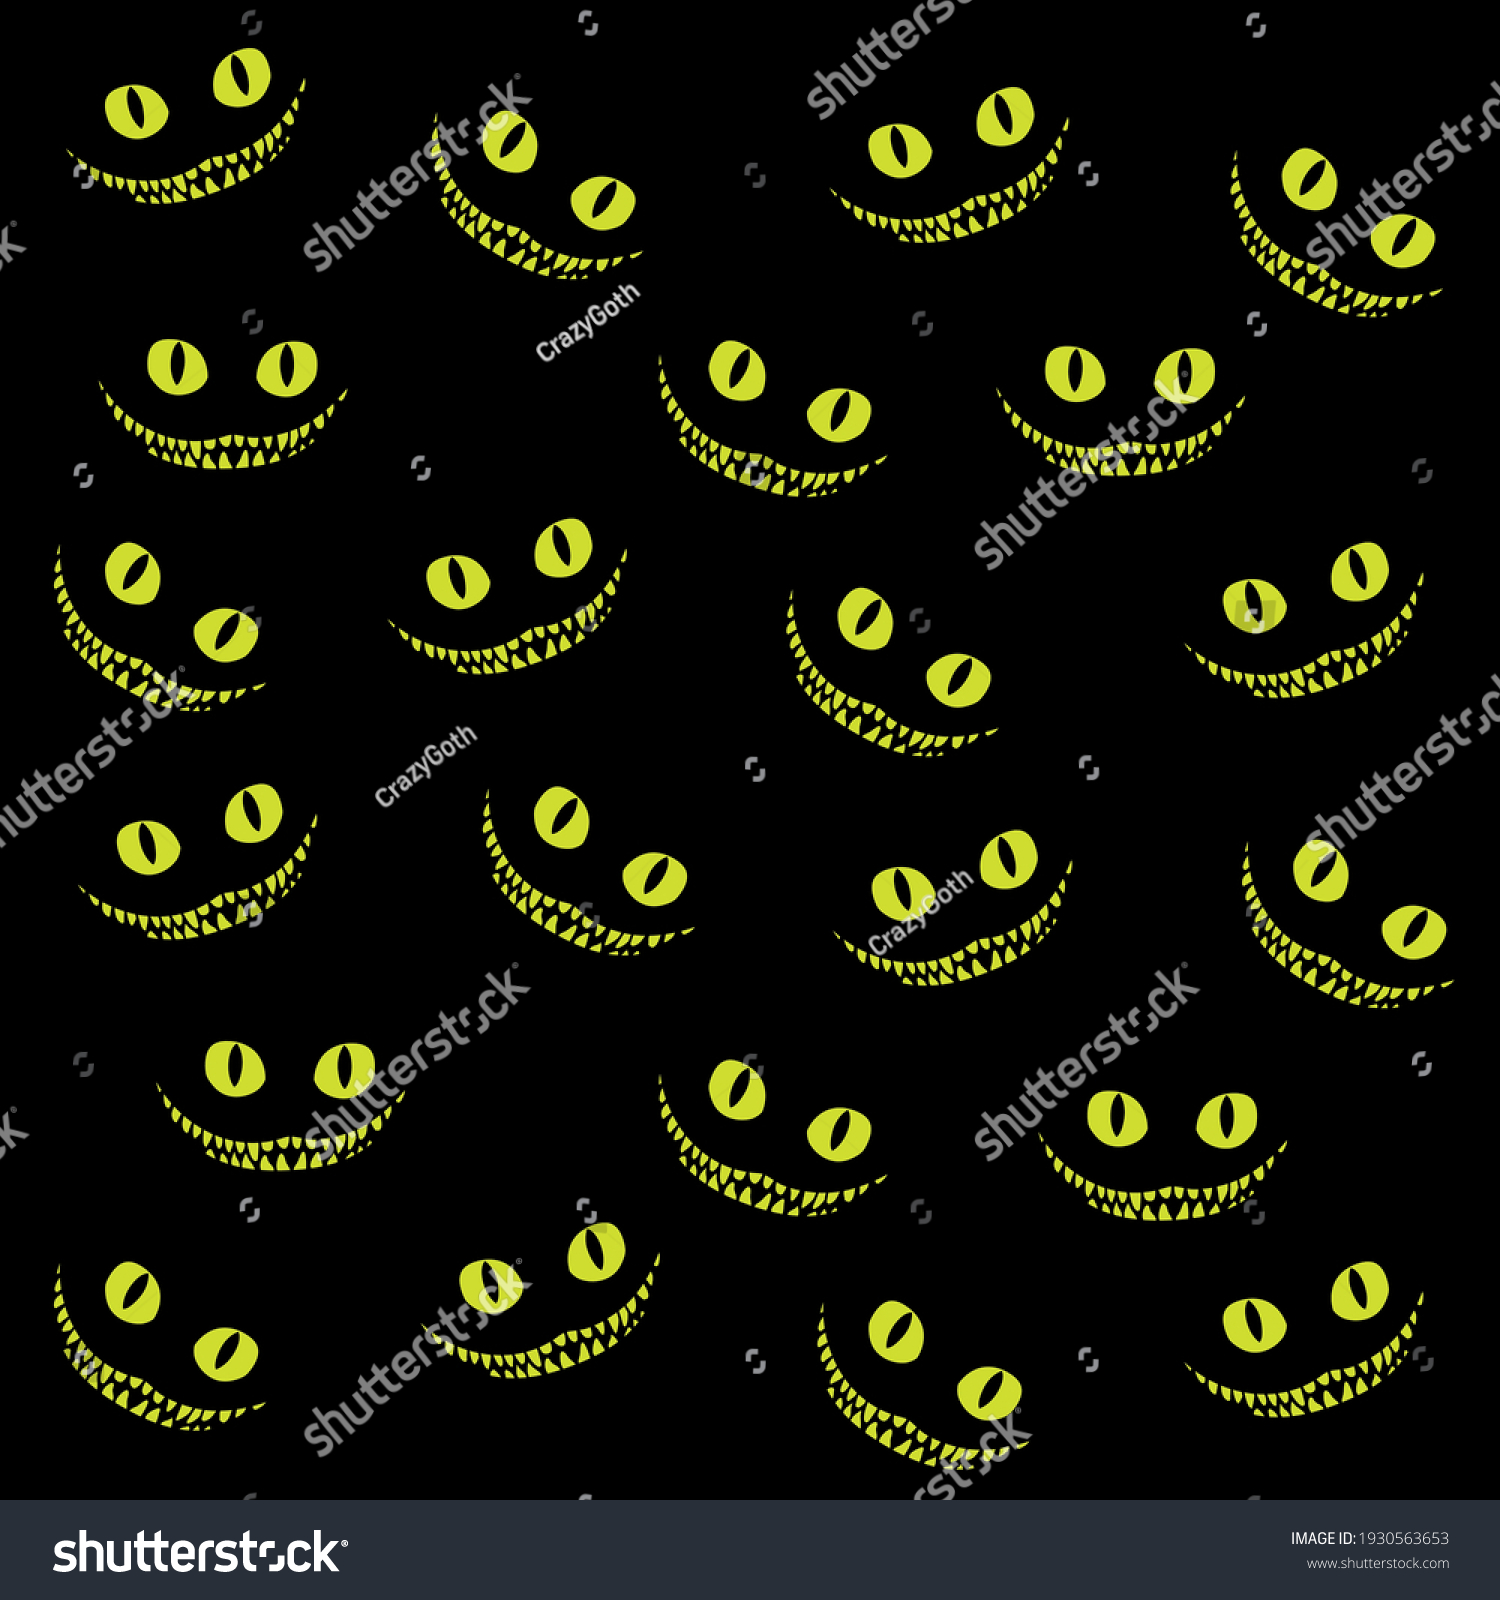 SVG of vector illustration smile of a crazy cat svg